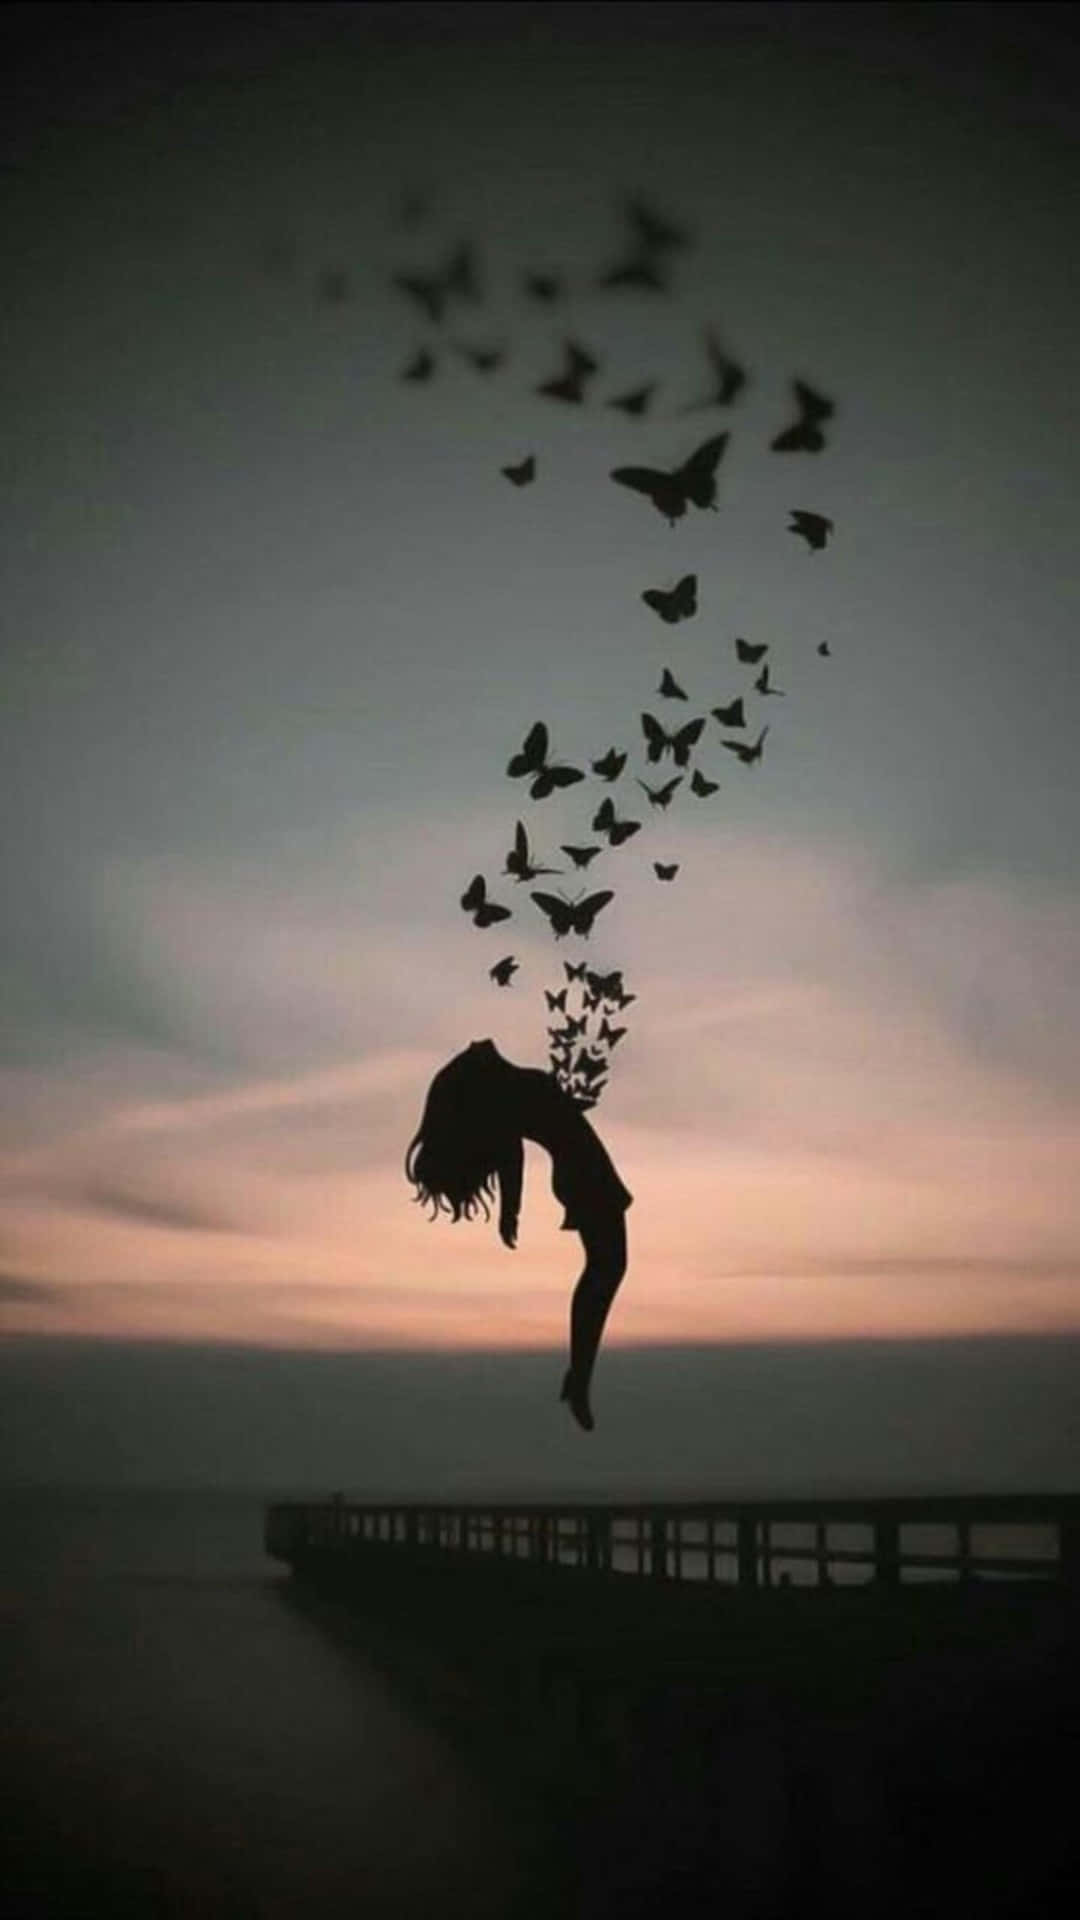 En pige flyver i luften med fugle, der flyver omkring hende. Wallpaper